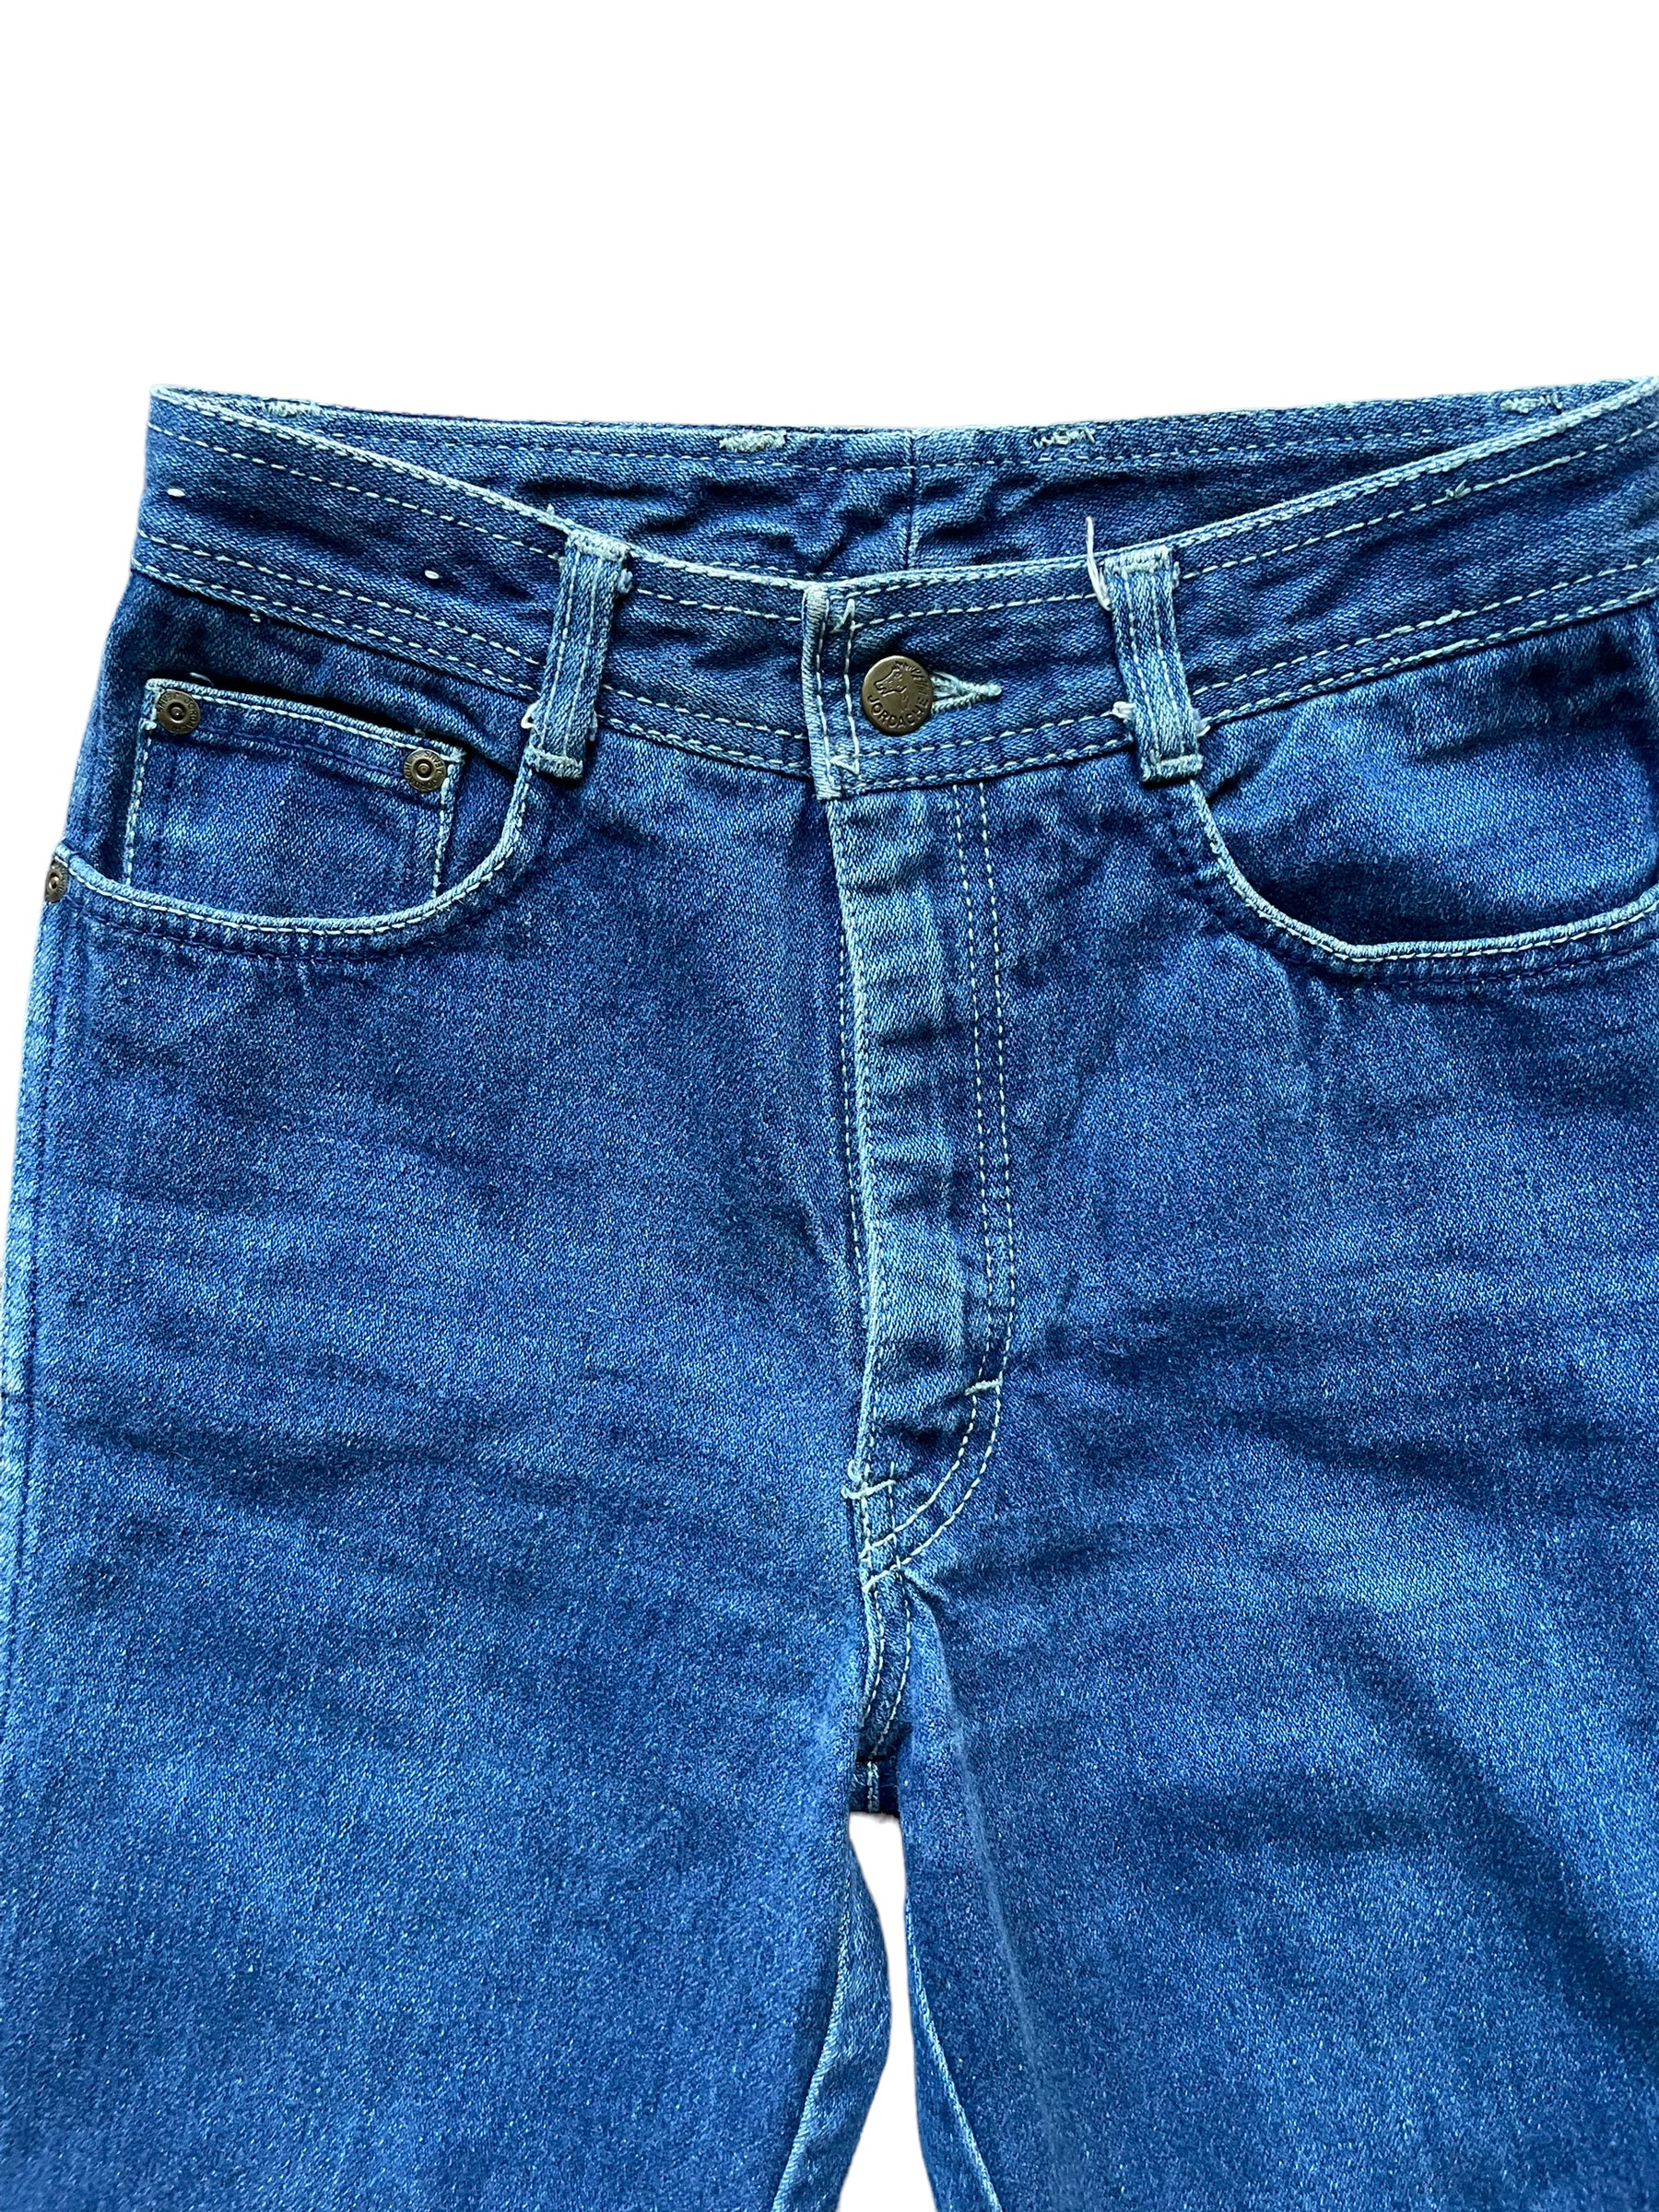 Front waist view of Vintage 1980s Jordache Jeans Sz SM 